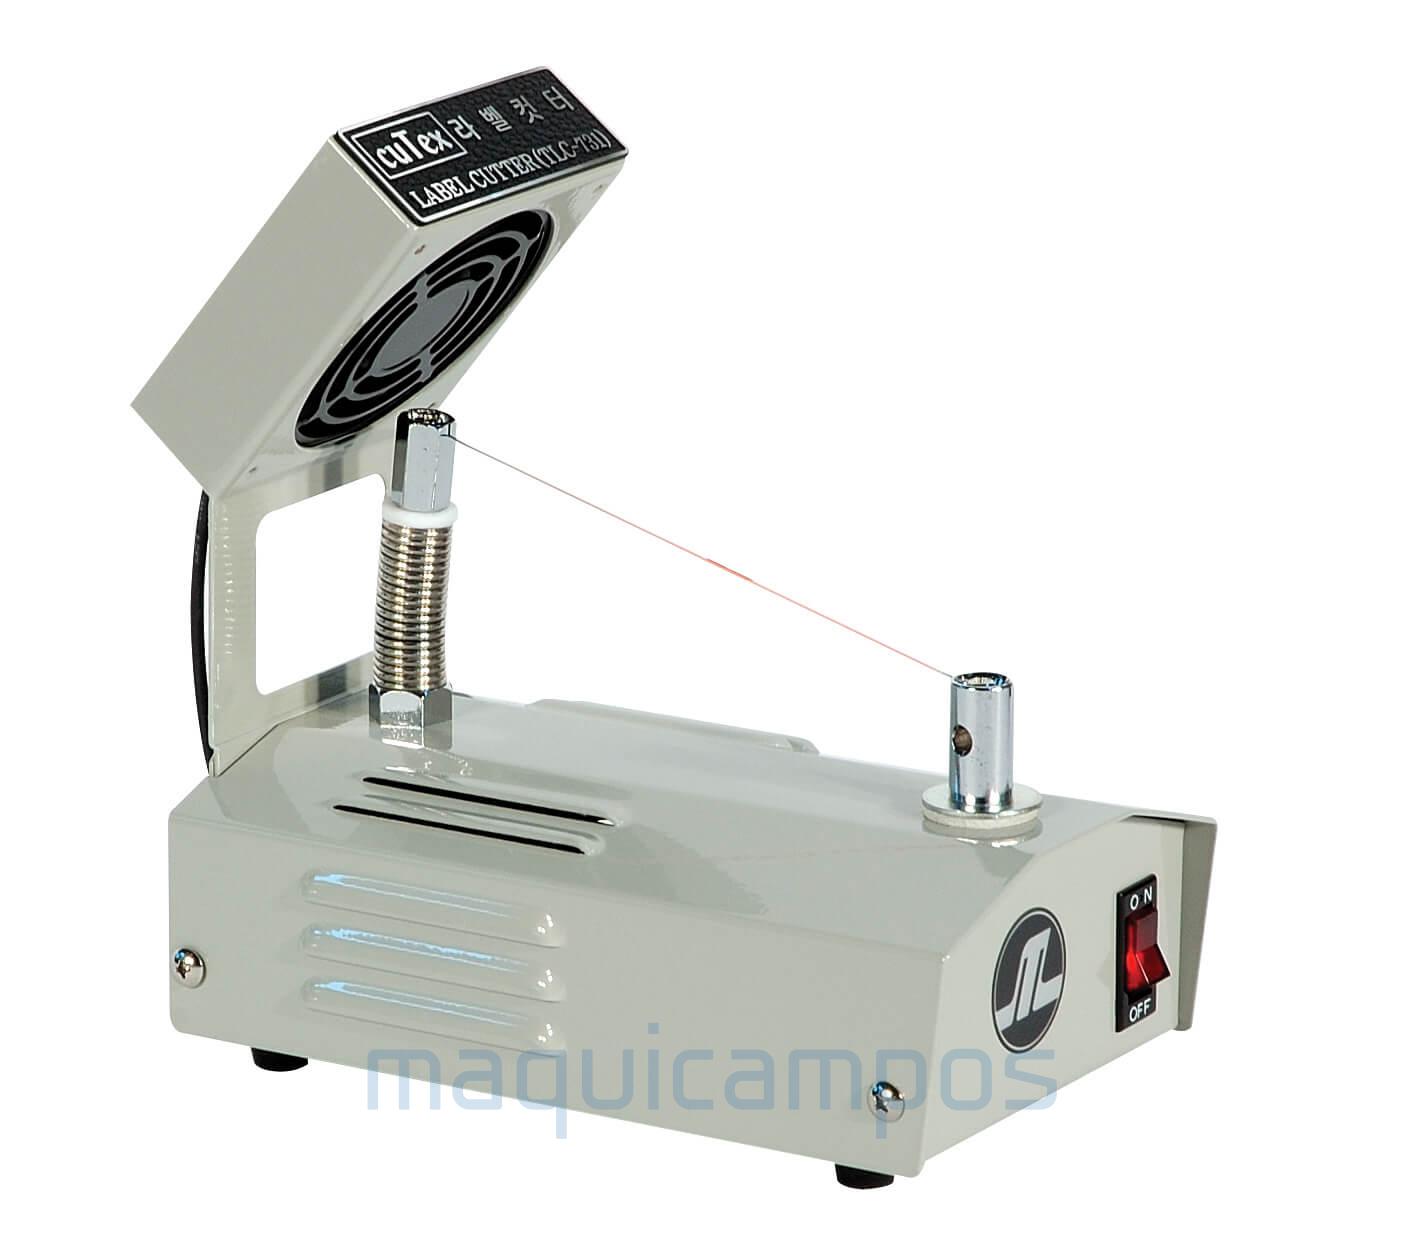 Cutex TLC-731 Manual Label Cutting Machine